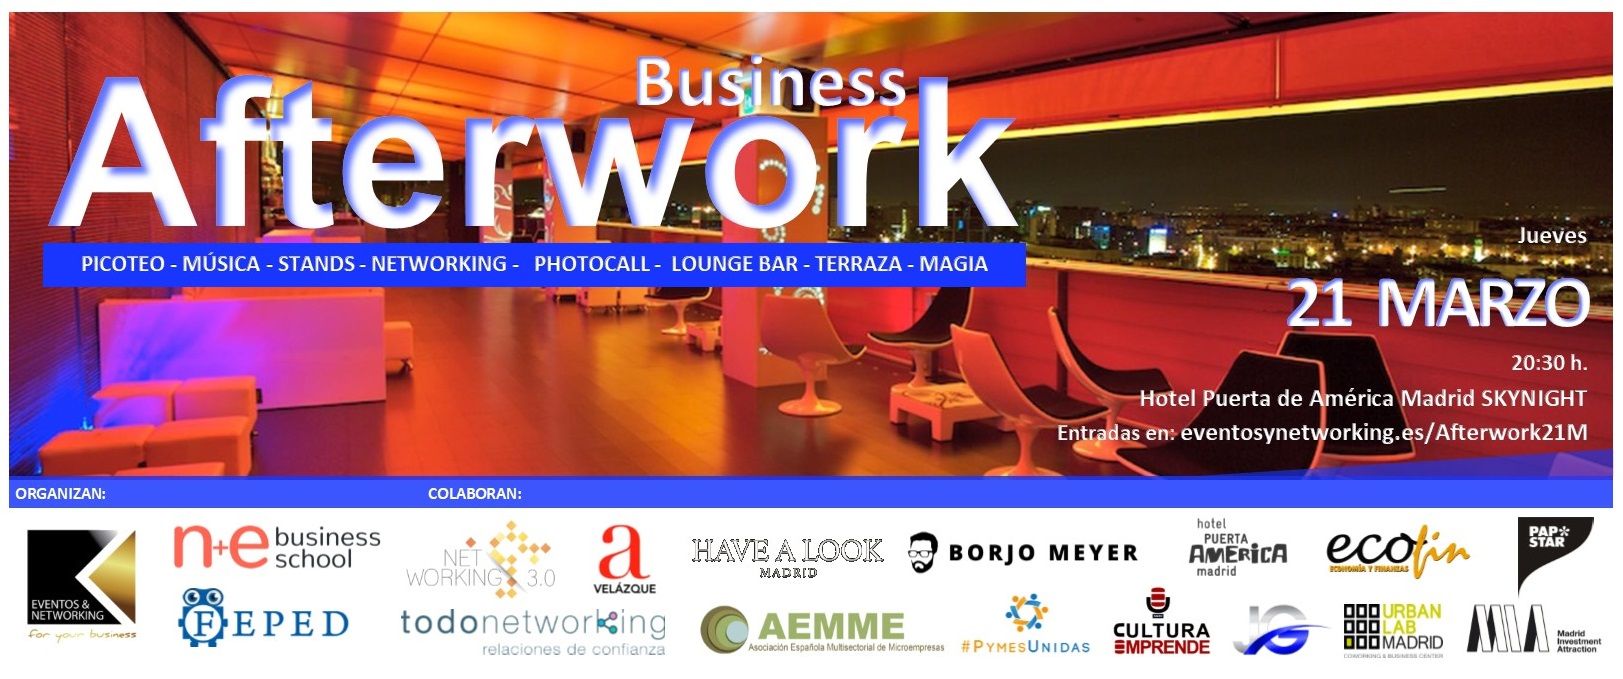 Business Afterwork, una oportunidad para ampliar las redes de contactos